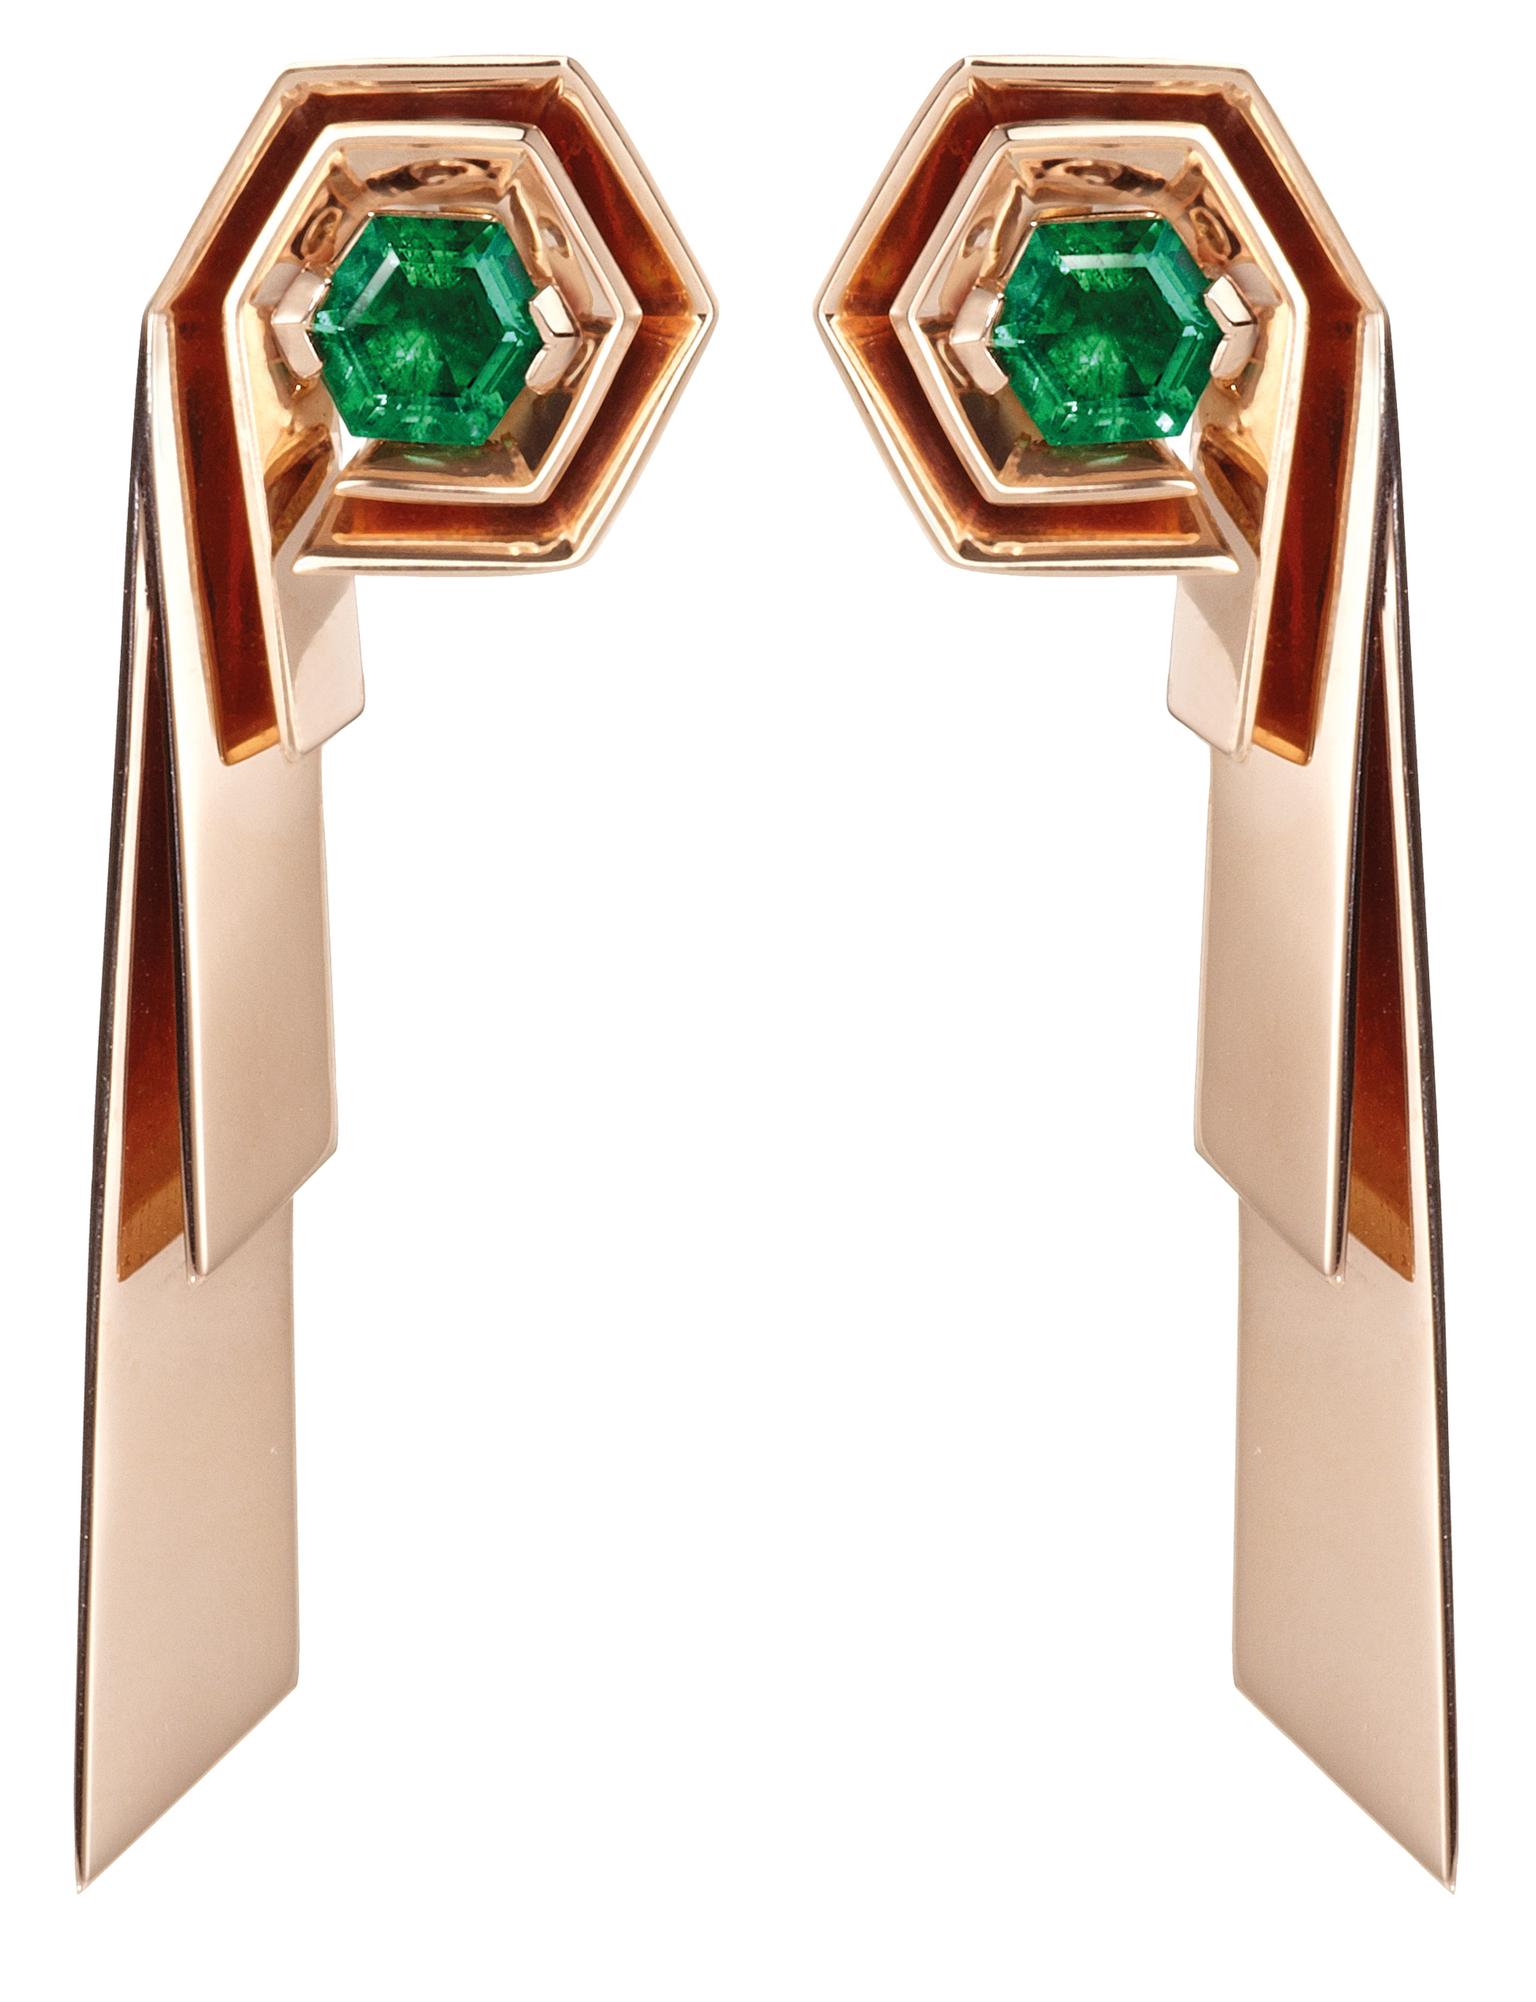 Hannah Martin for Gemfields emerald earrings_20130808_Zoom